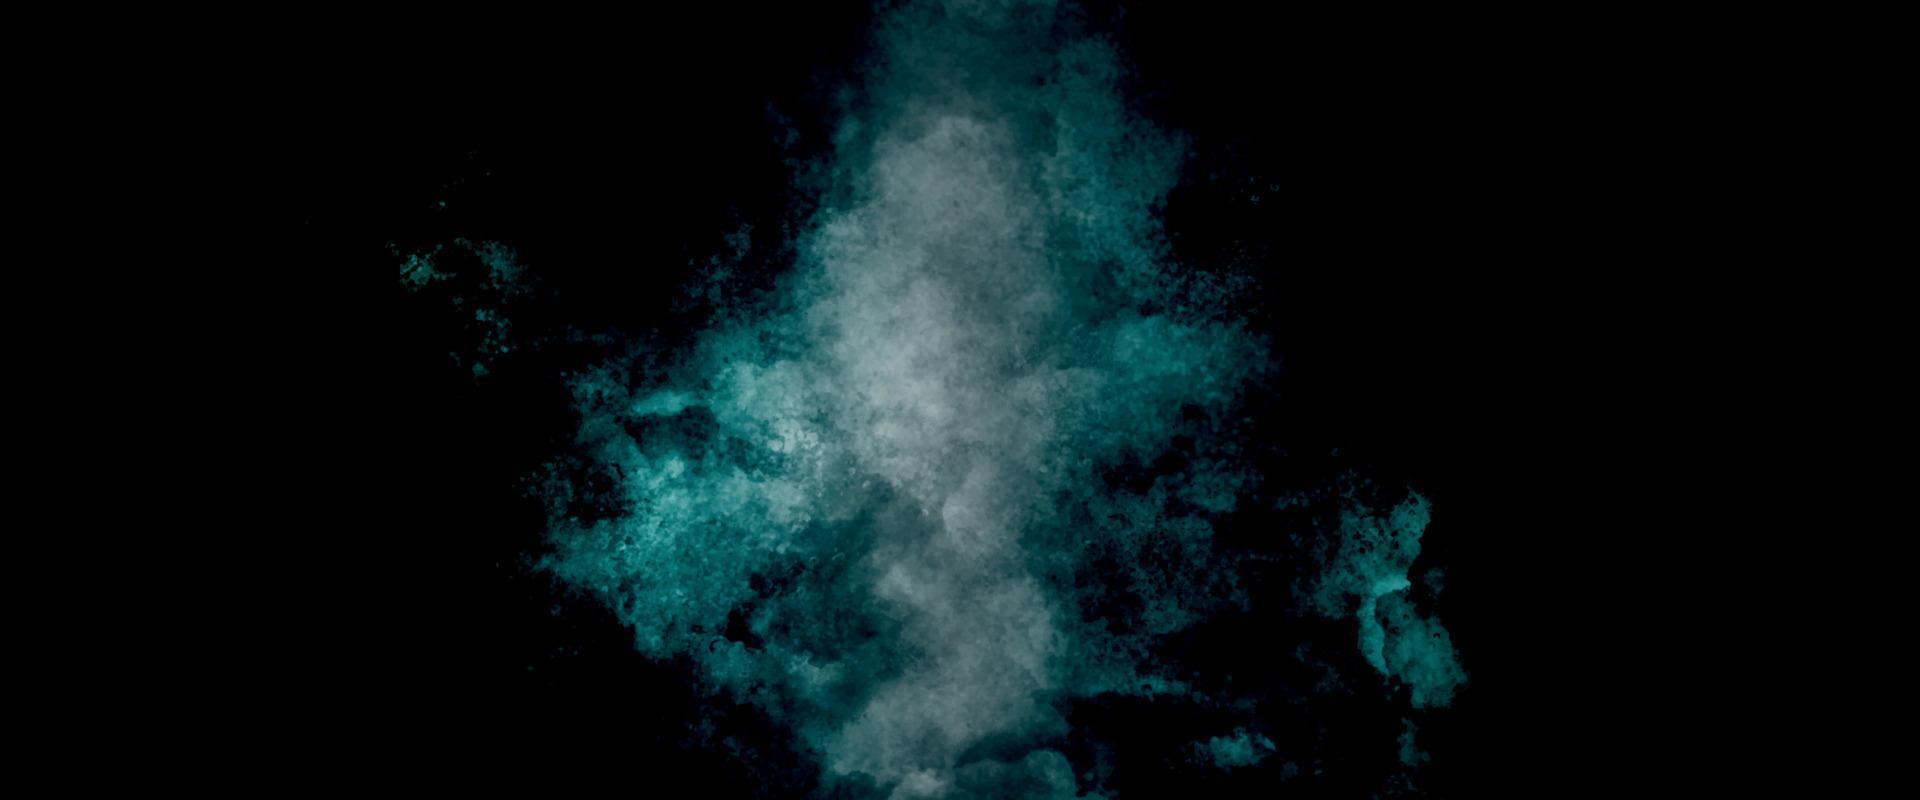 Hintergrund mit Wolken. alt Jahrgang Blau Grün Hintergrund mit betrübt Textur und Grunge Design mit schwarz Grenze. kosmisch Neon- Polar- Beleuchtung Aquarell Hintergrund vektor